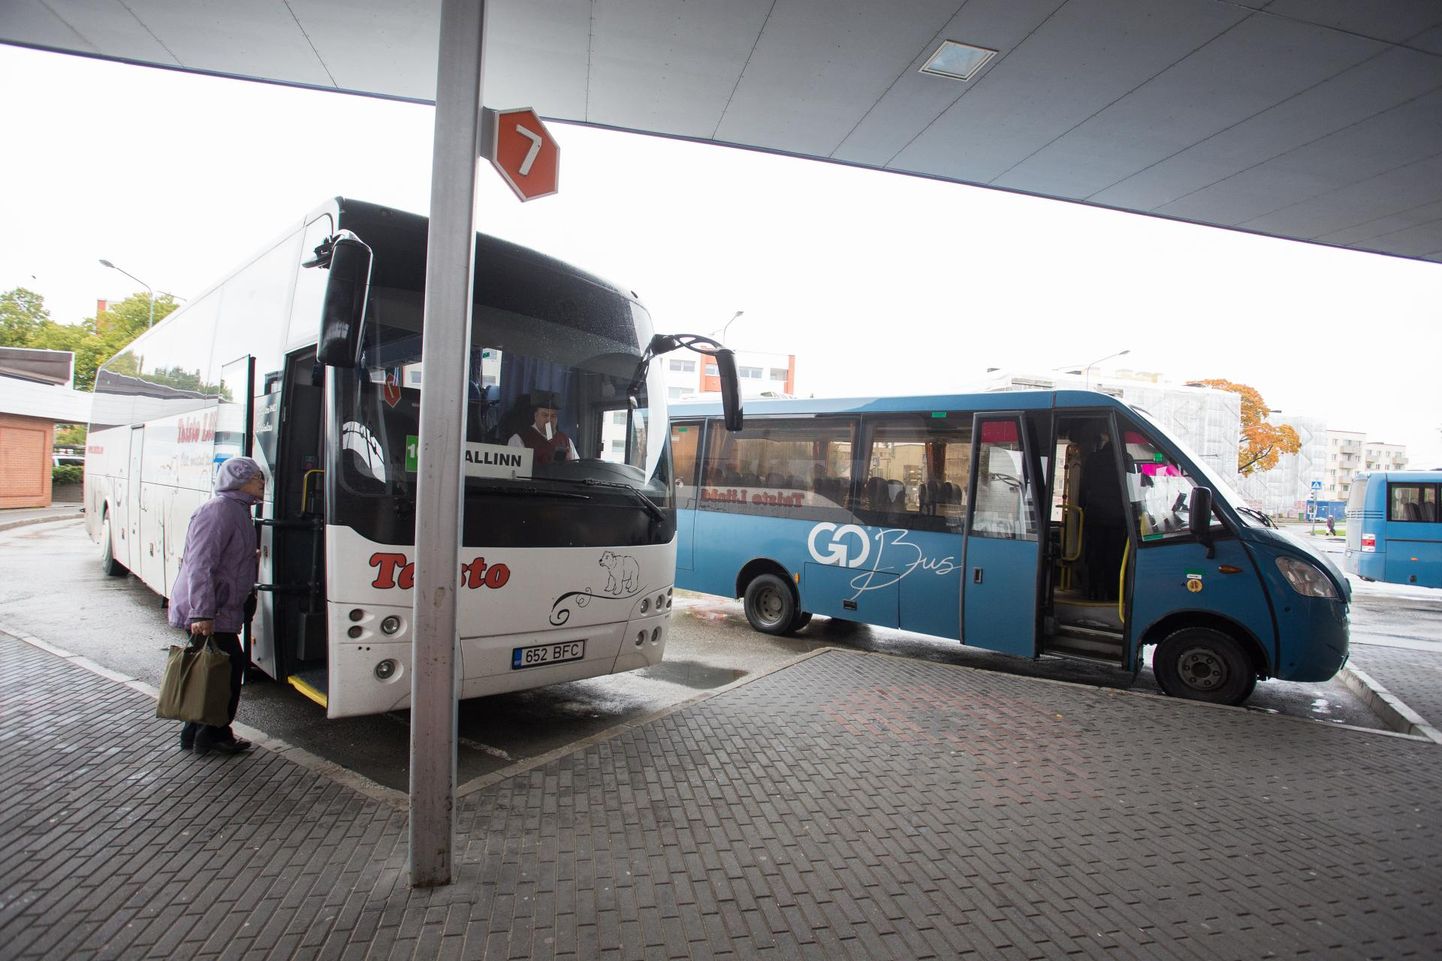 Praeguse seisuga ei saa 1. juulist, mil tasuta maakondlik ühistransport kehtima peaks hakkama, Rakvere bussijaamast tasuta siiski kuhugi sõita.